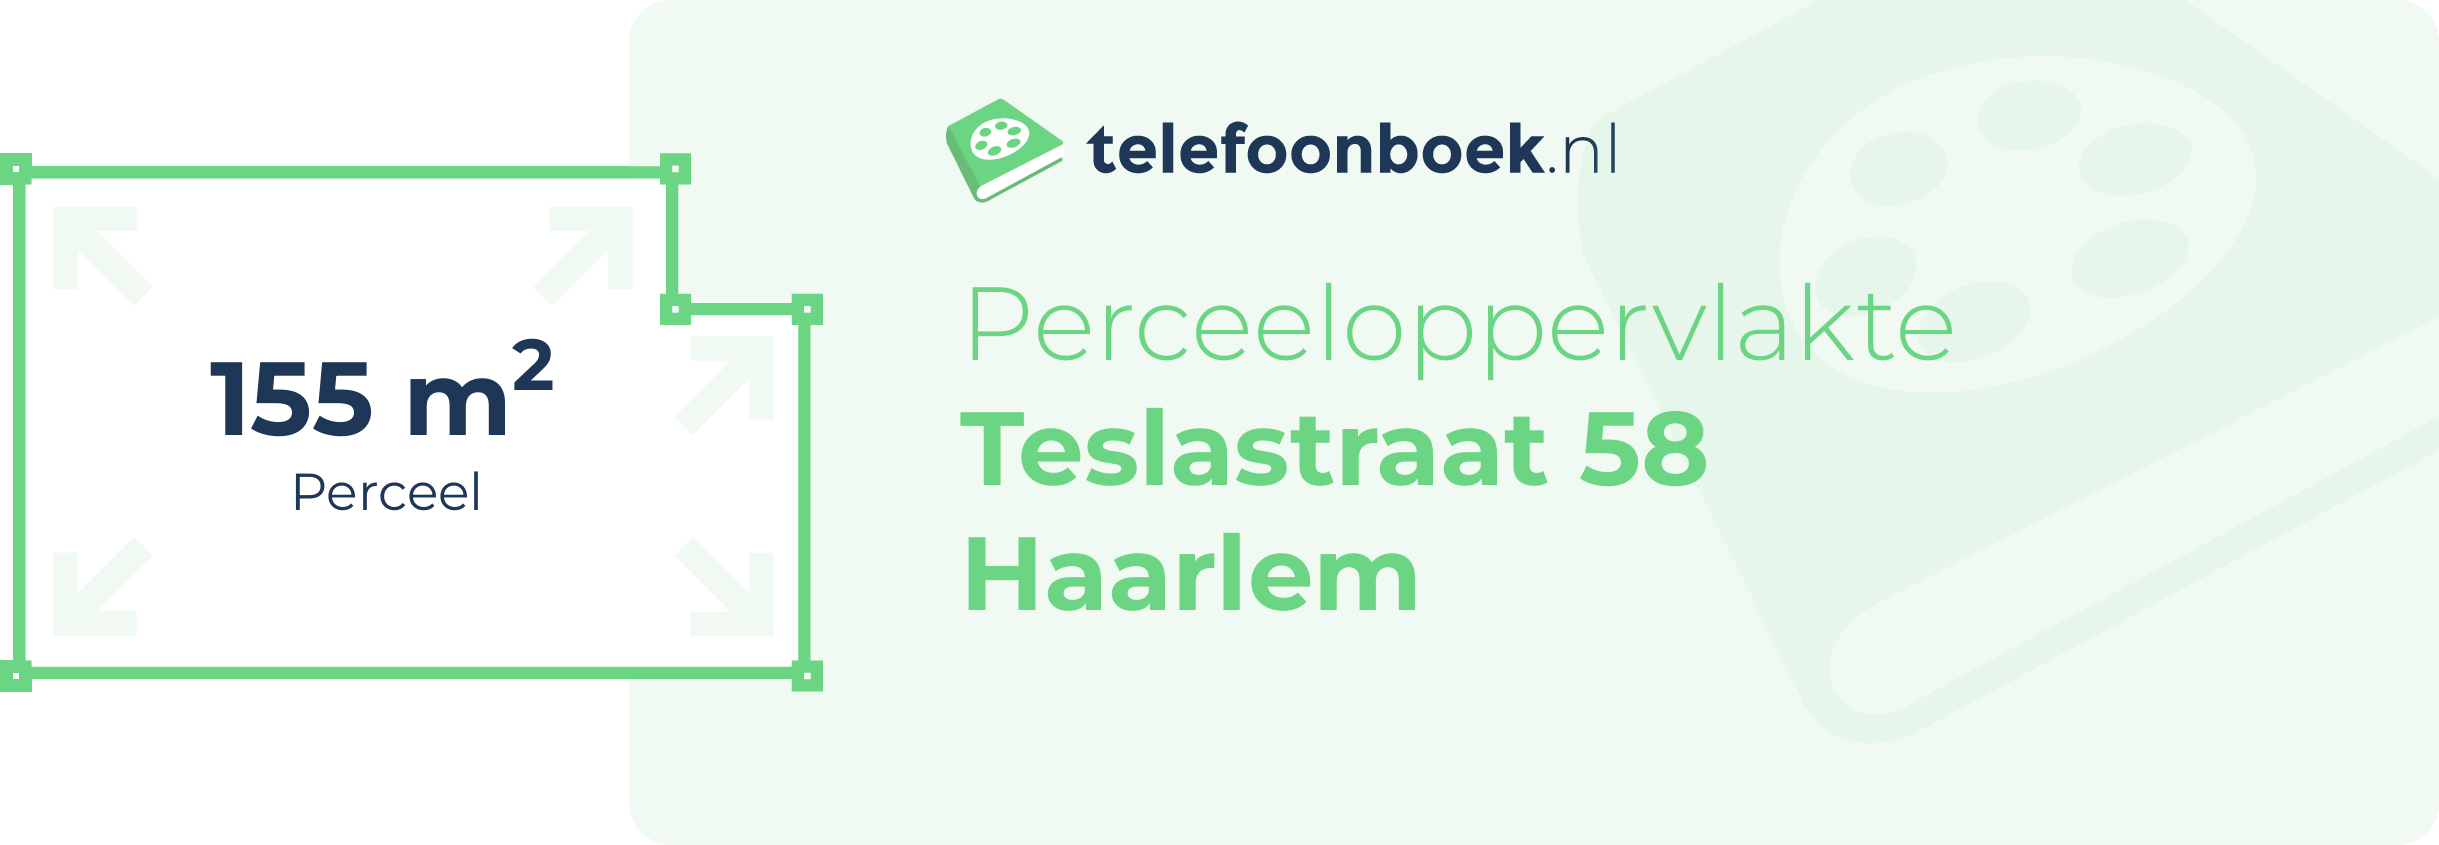 Perceeloppervlakte Teslastraat 58 Haarlem